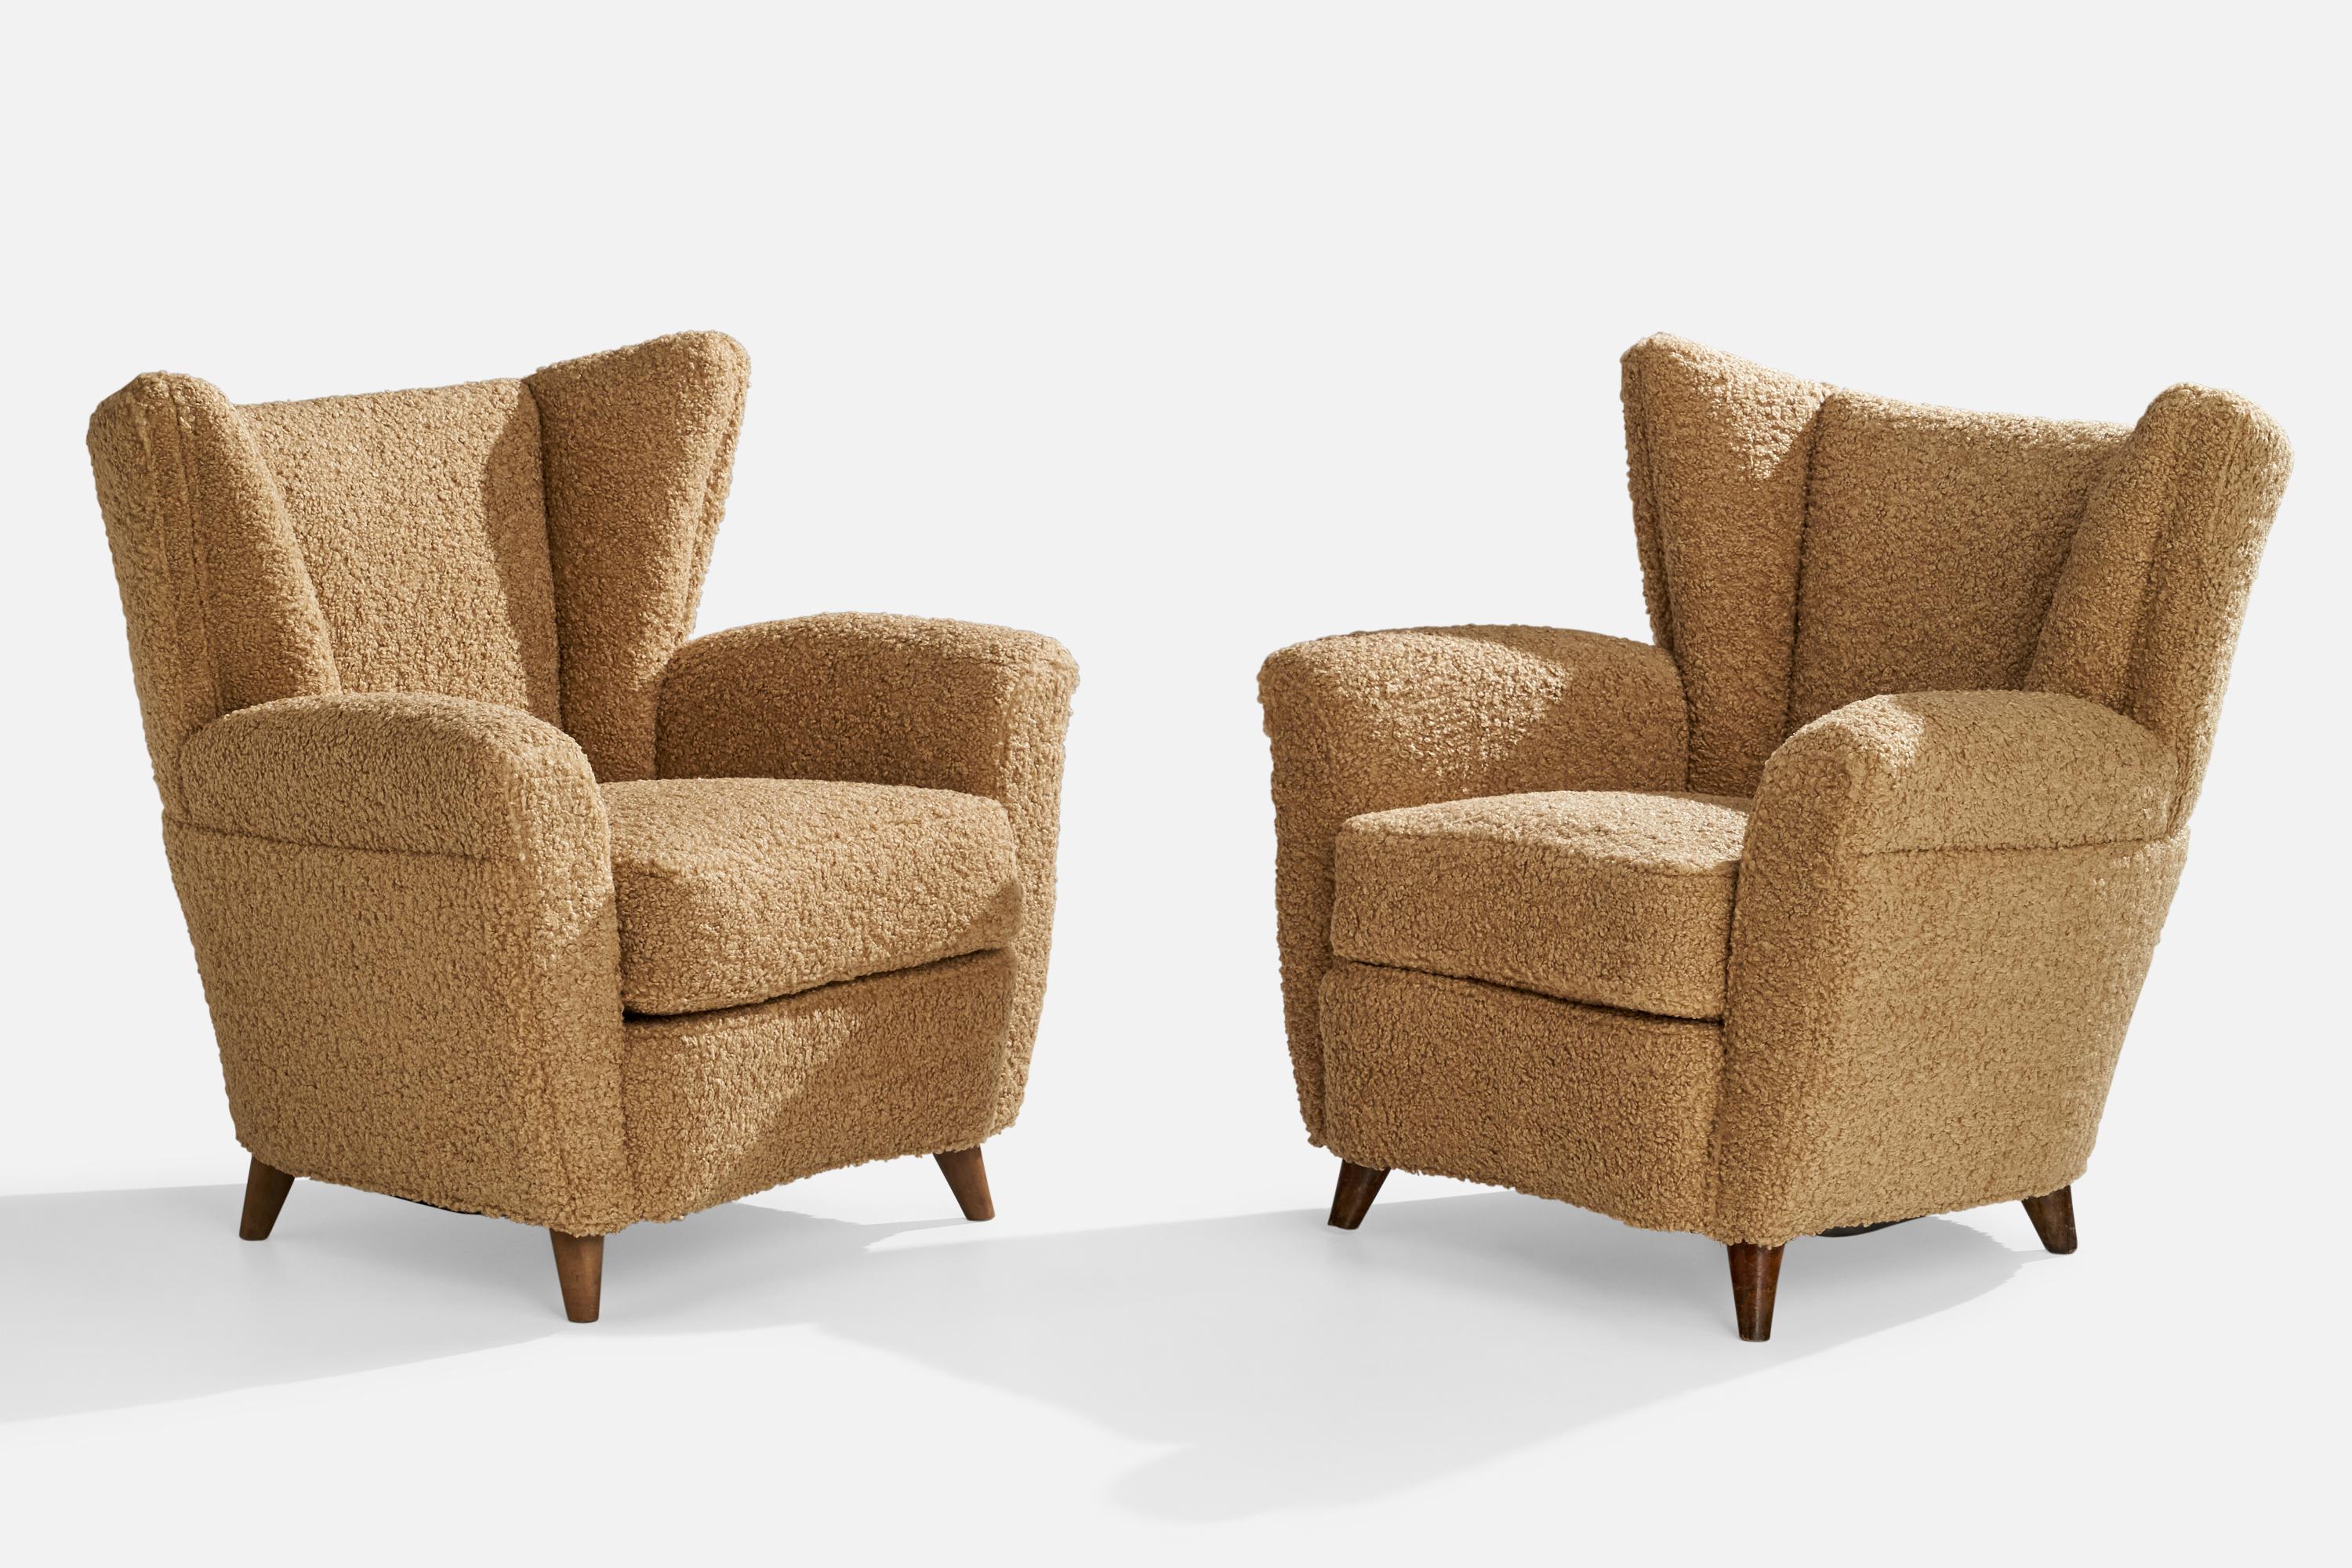 Ein Paar beige-braune Sessel aus Bouclé-Stoff und dunkel gebeiztem Holz, entworfen und hergestellt in Italien, 1940er Jahre.

Sitzhöhe 17,5